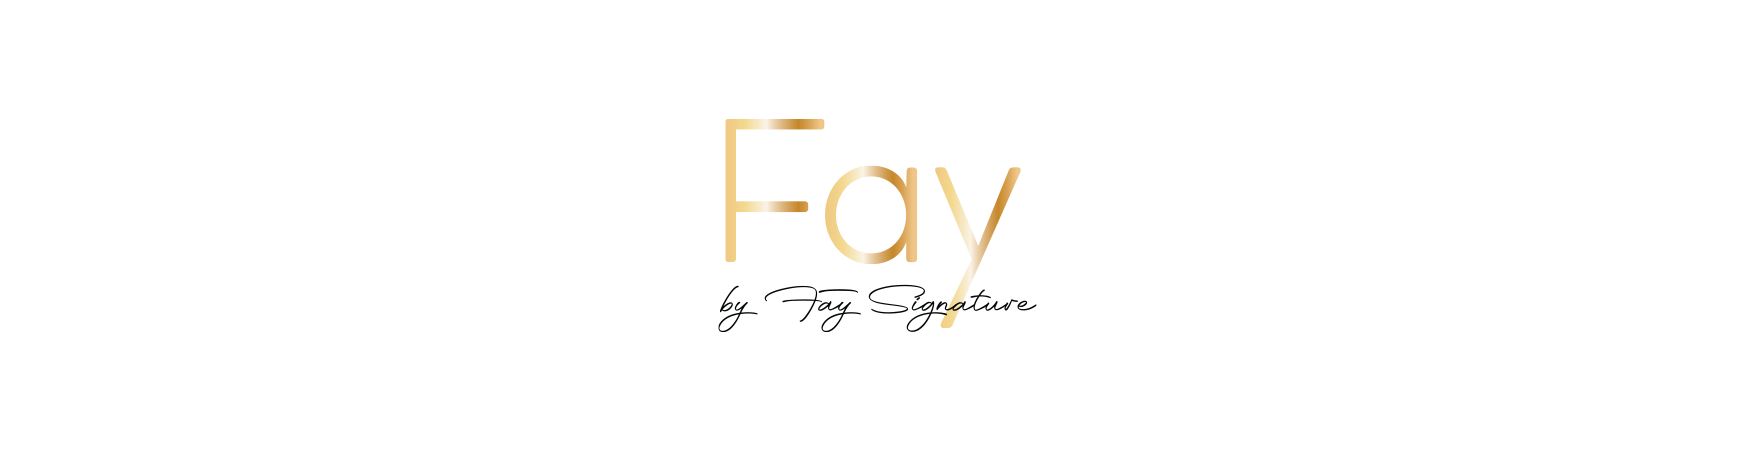 Fay by Fay